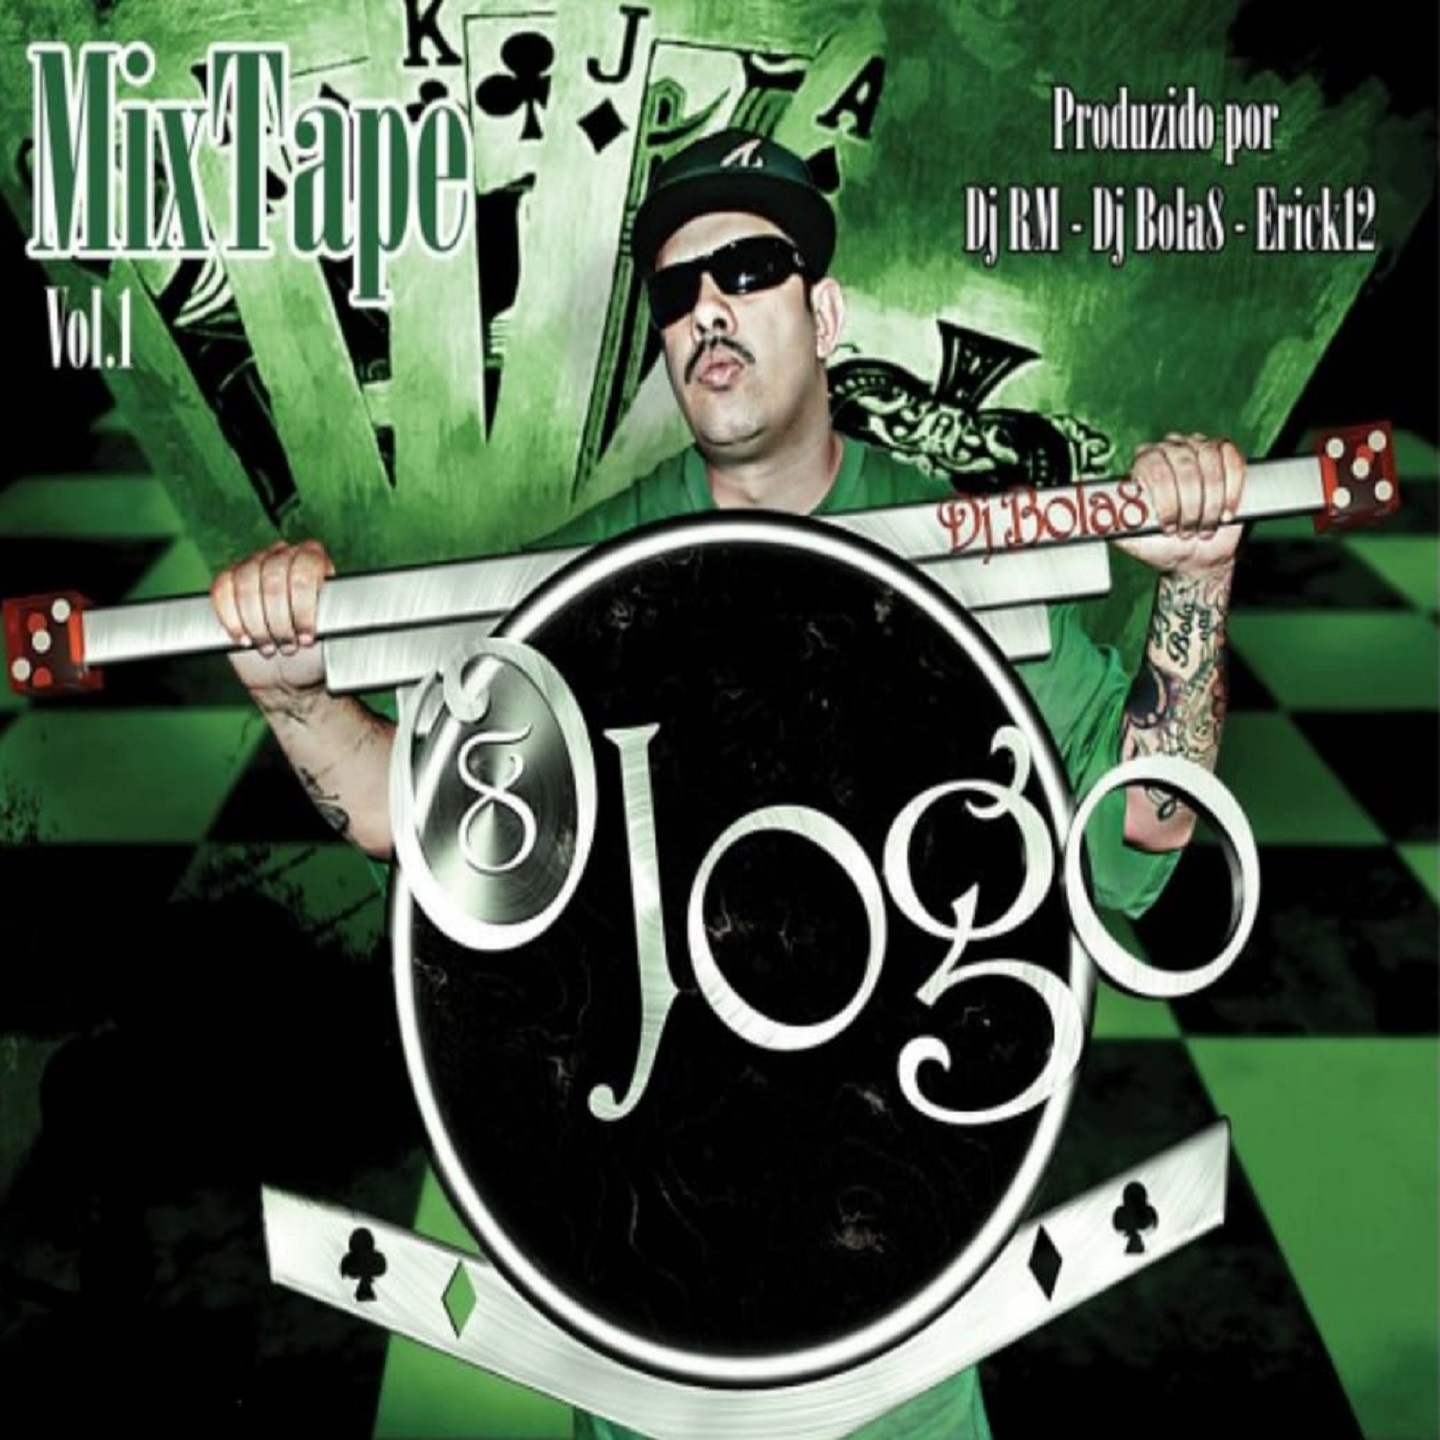 Mix-Tape: O Jogo, Vol. 1